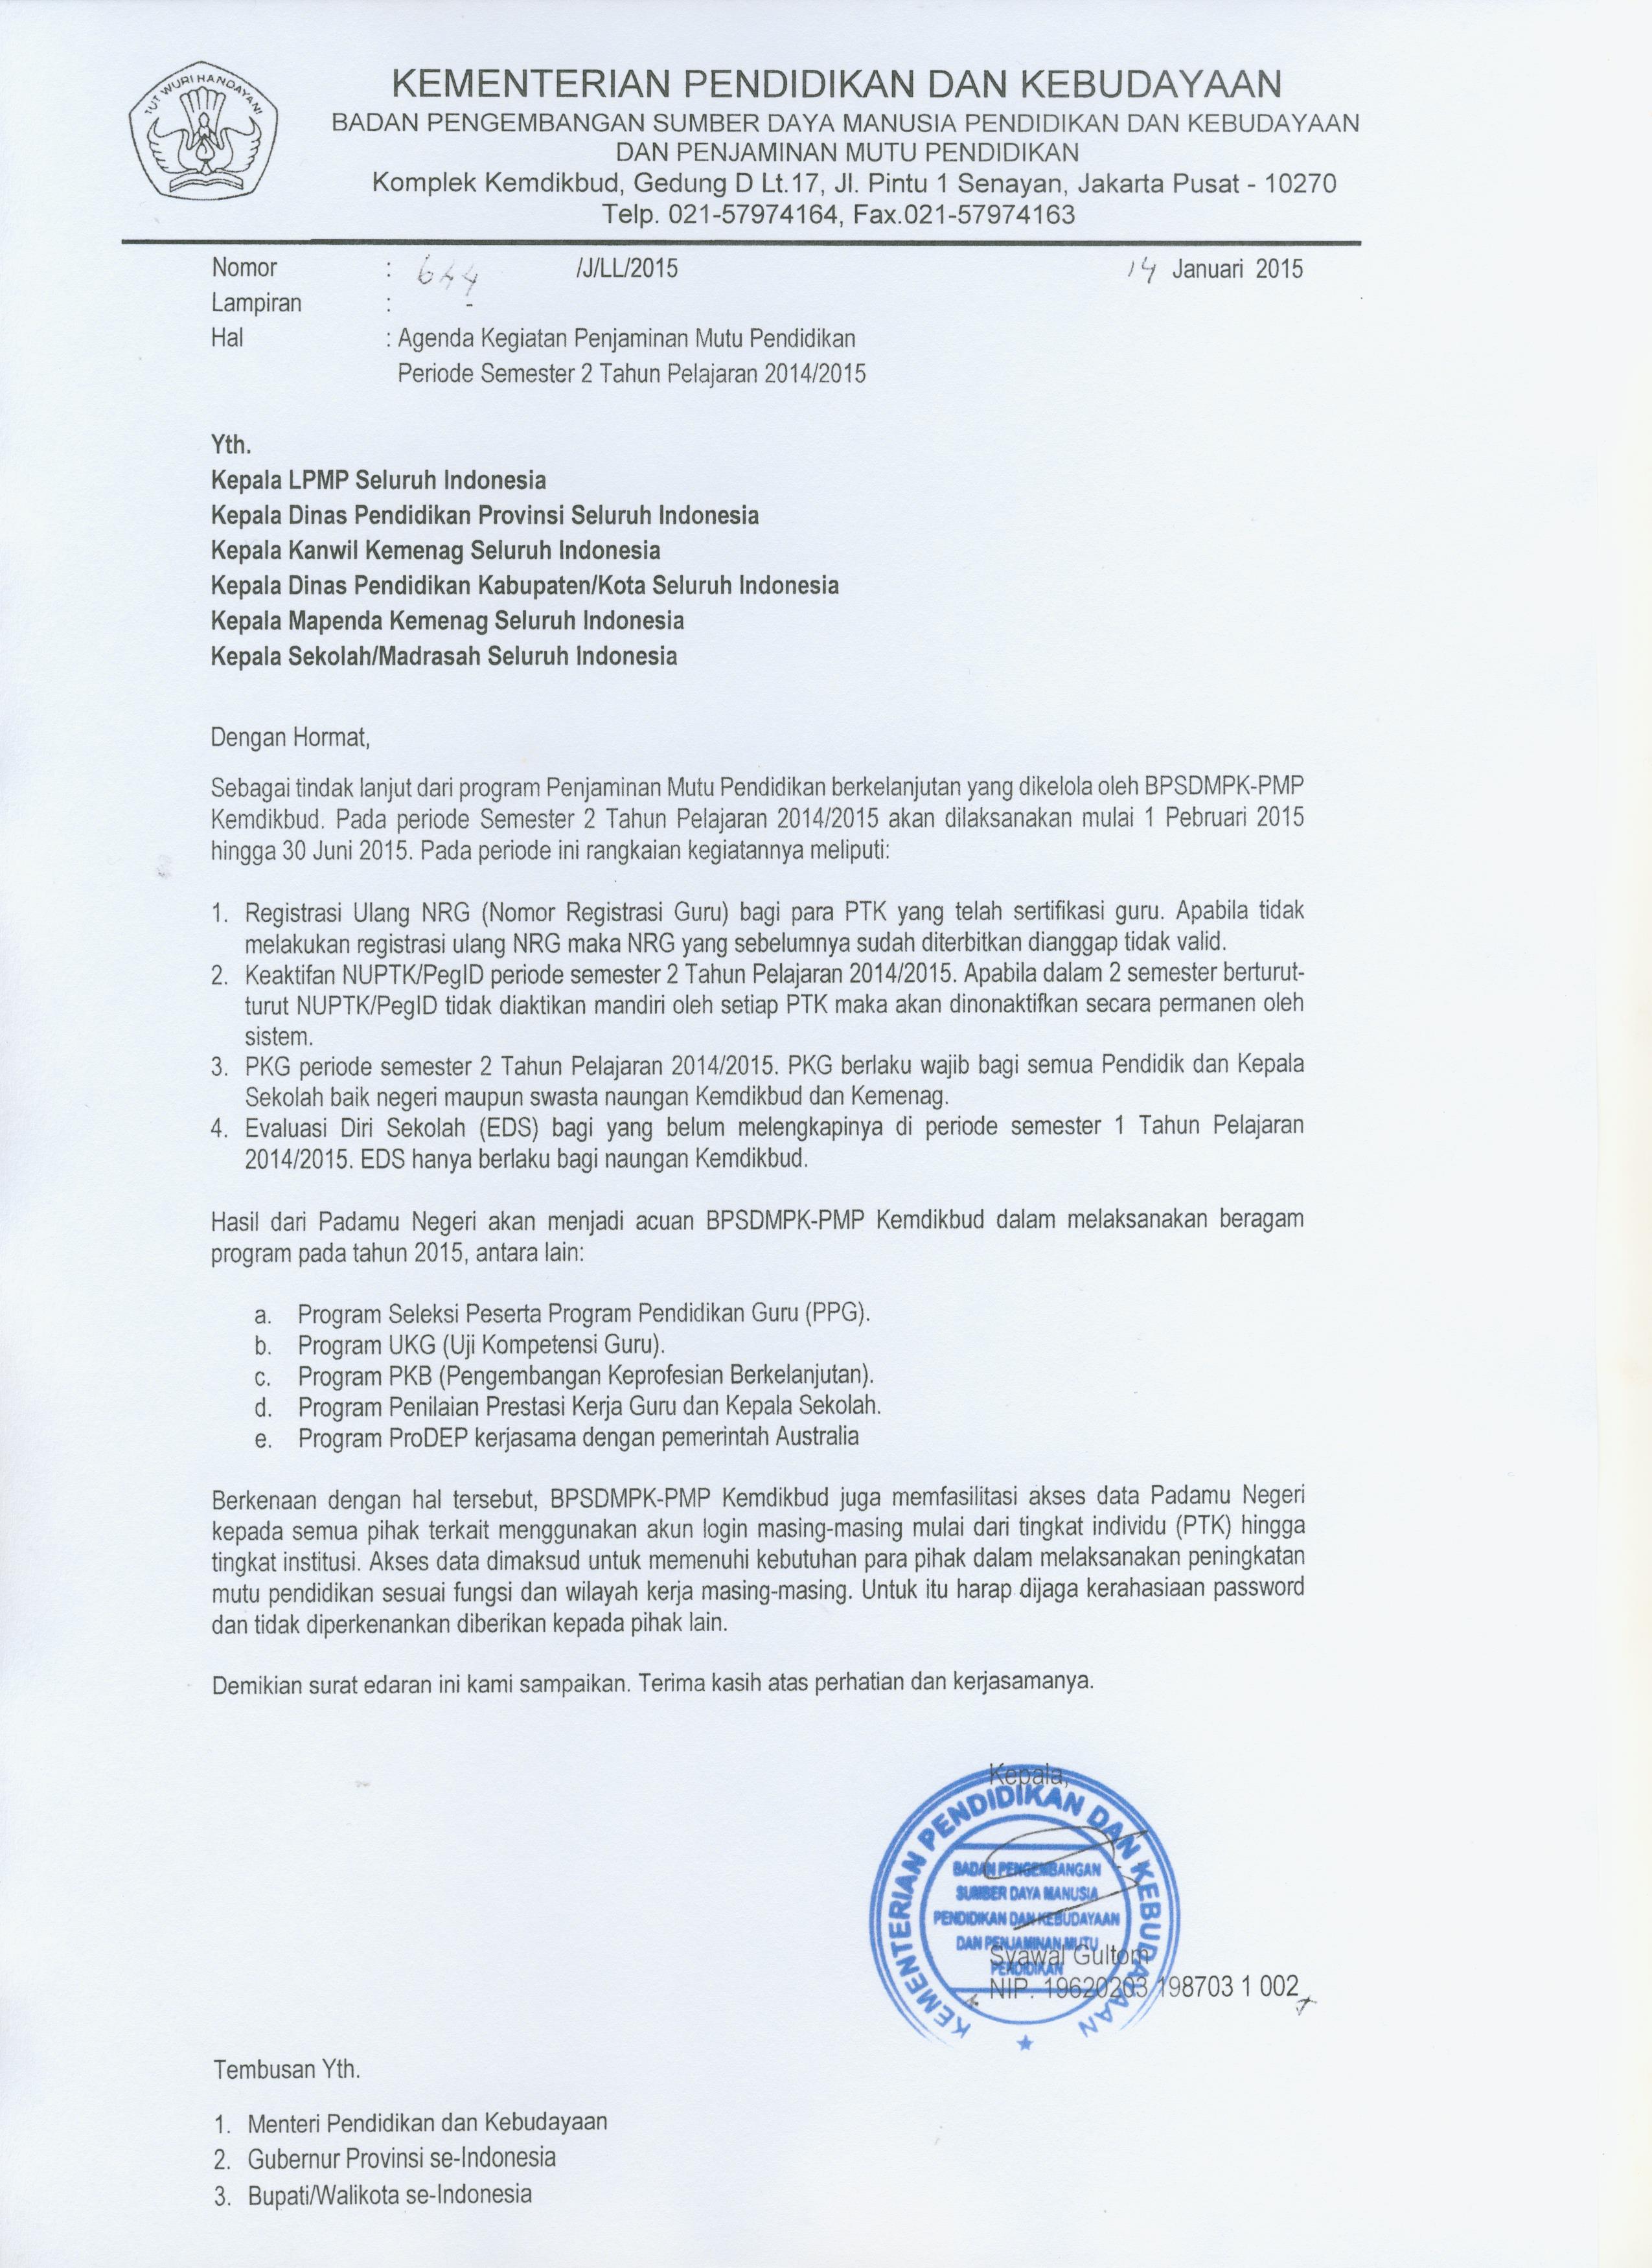 Surat Edaran Agenda Kegiatan PMP semester 2 2014 2015